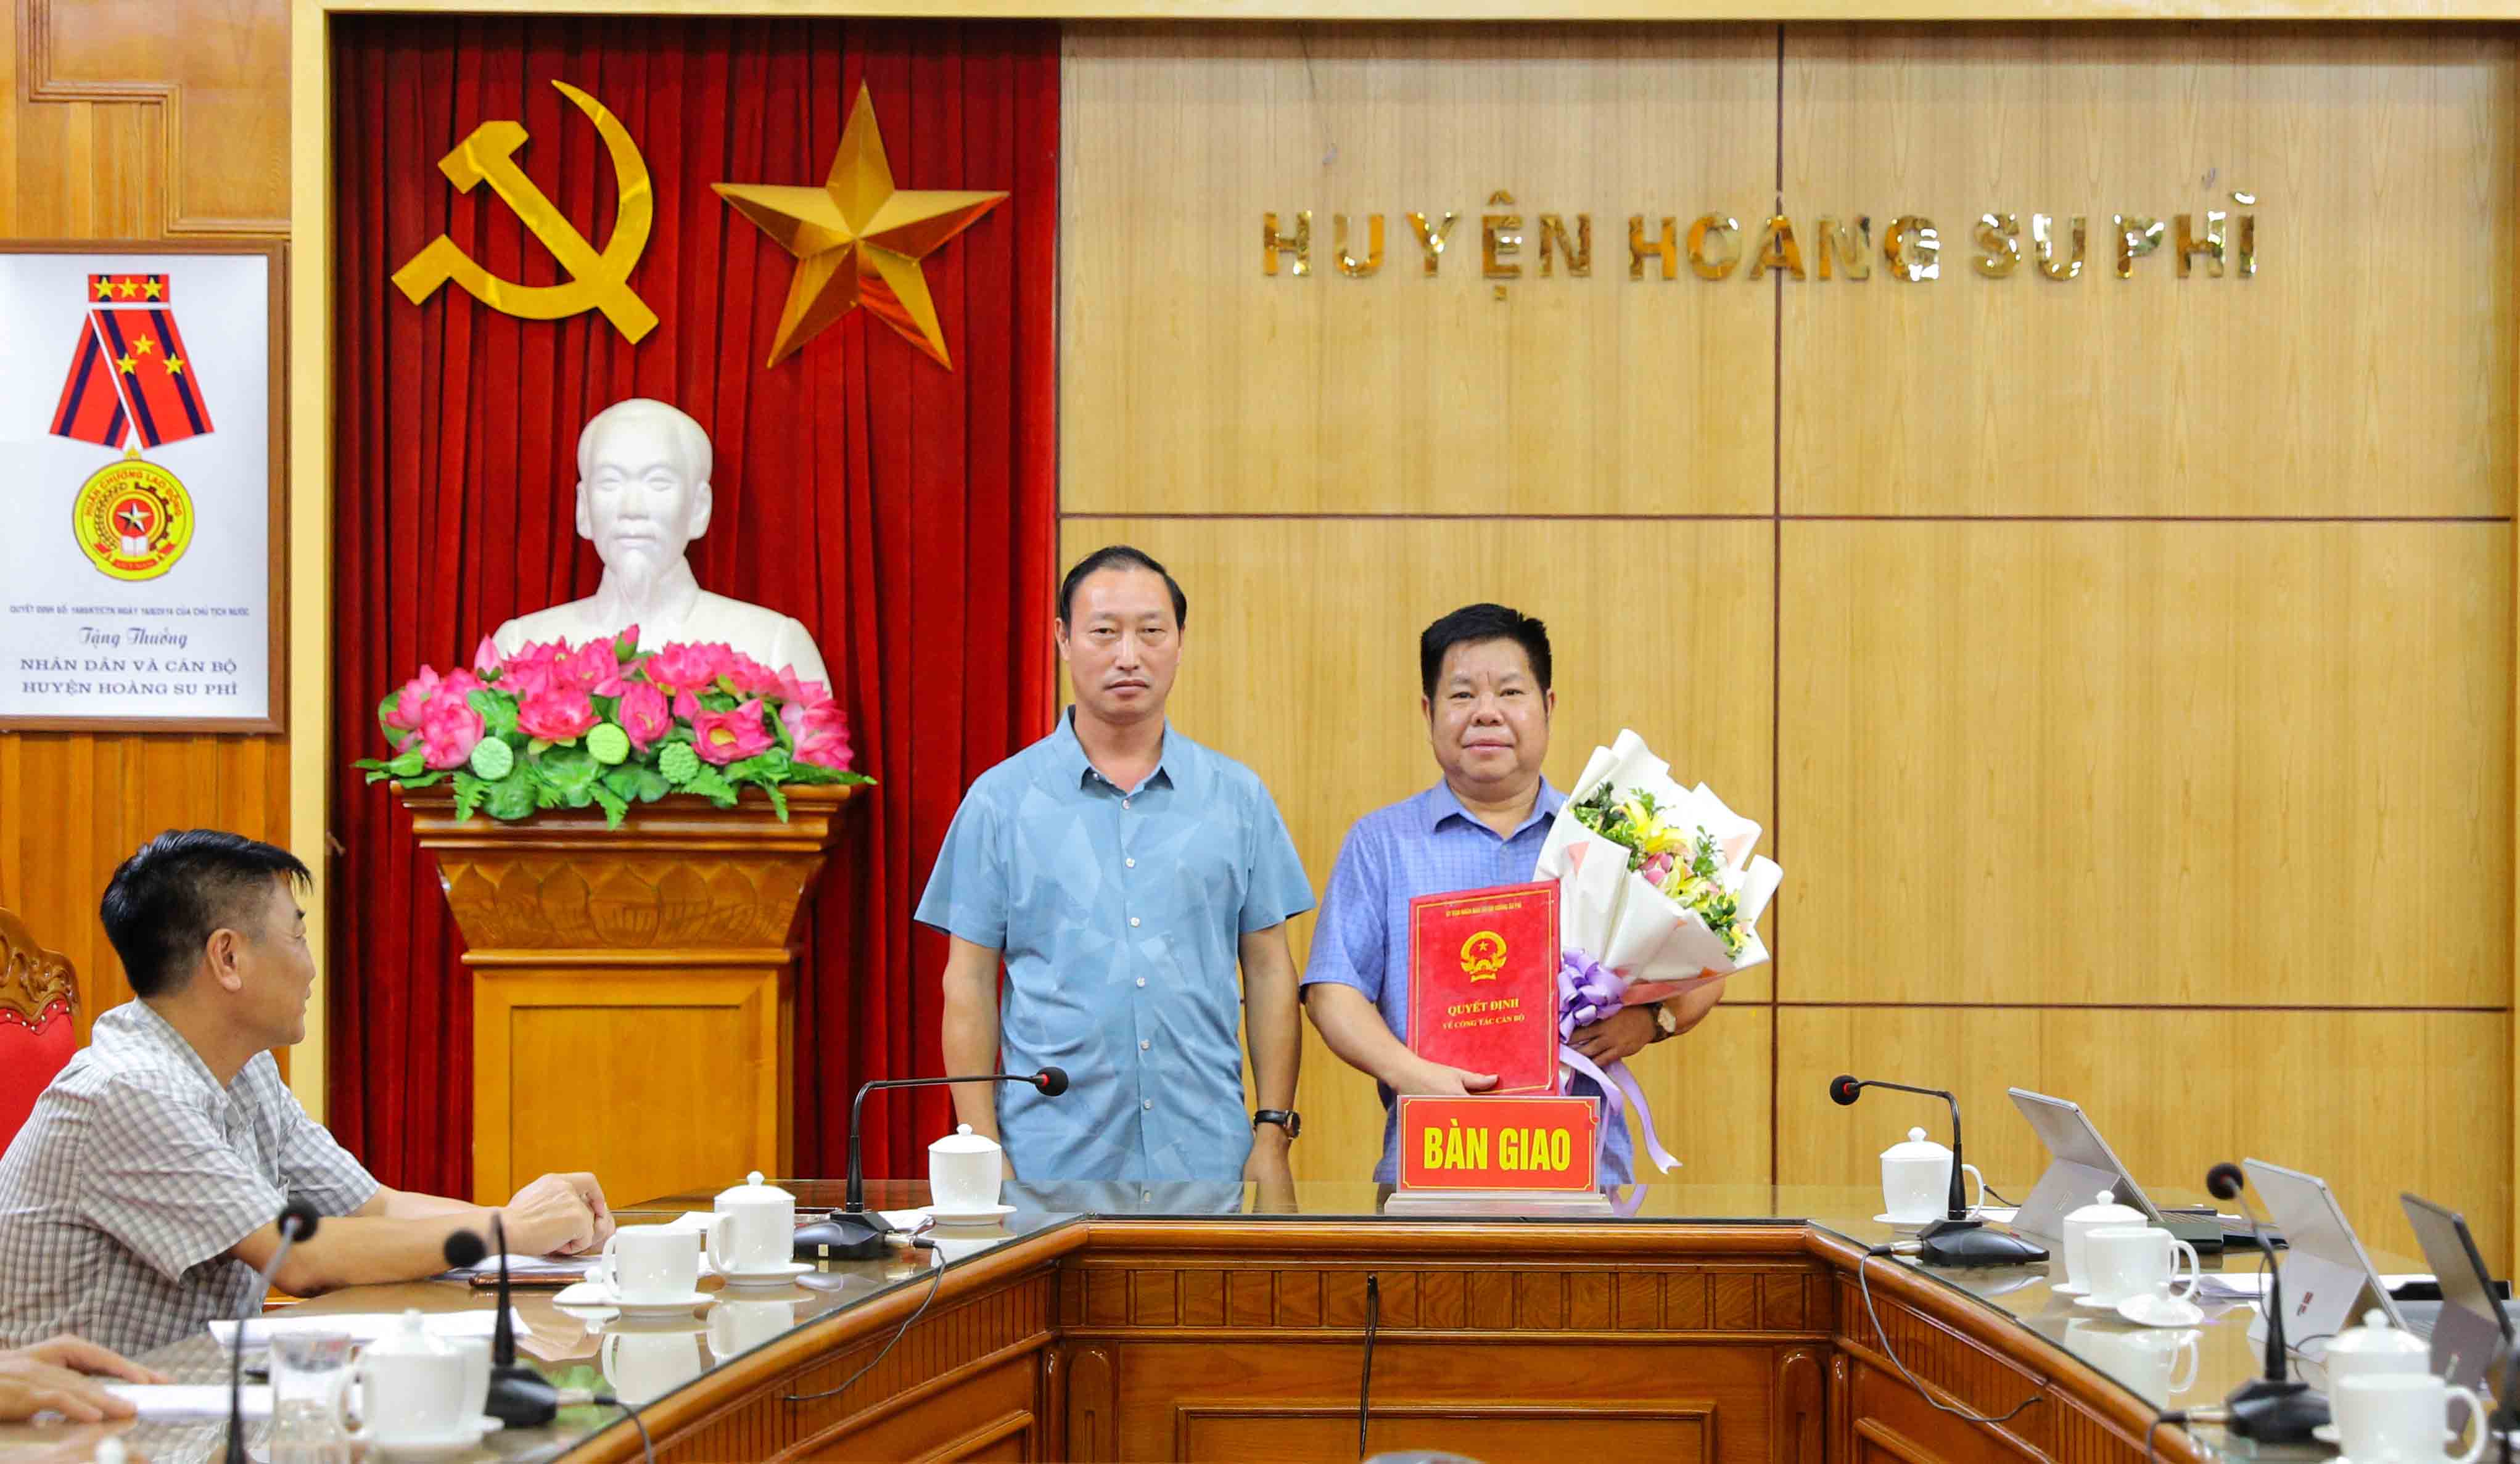 Công bố quyết định nghỉ chế độ đối với Chủ tịch UBND huyện Hoàng Su Phì